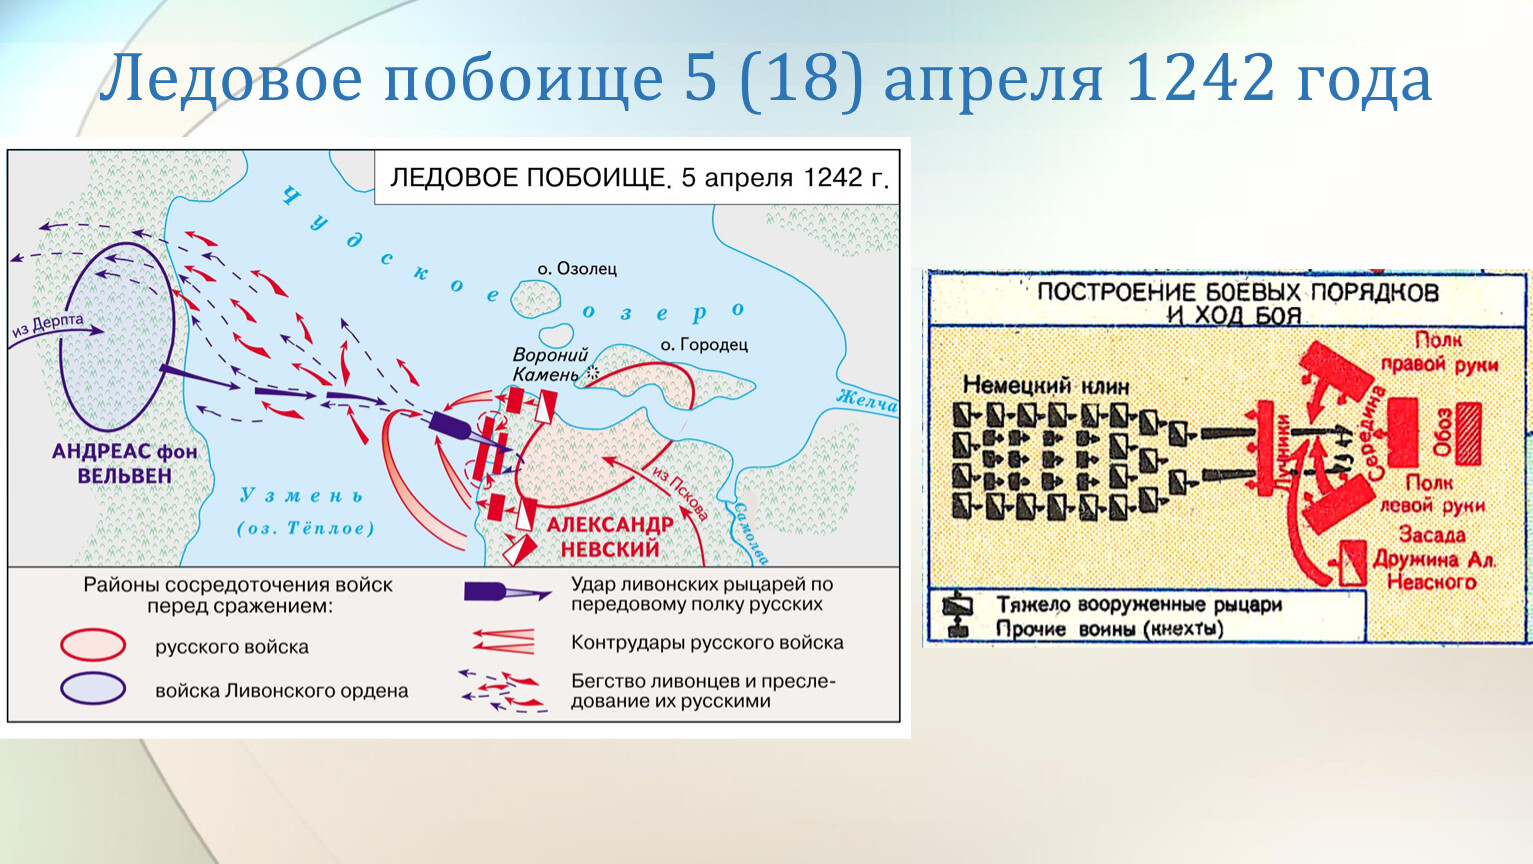 Ледовое побоище состоялось на озере. Битва на Чудском озере схема битвы. Битва на Чудском озере 1242 год Ледовое побоище карта.